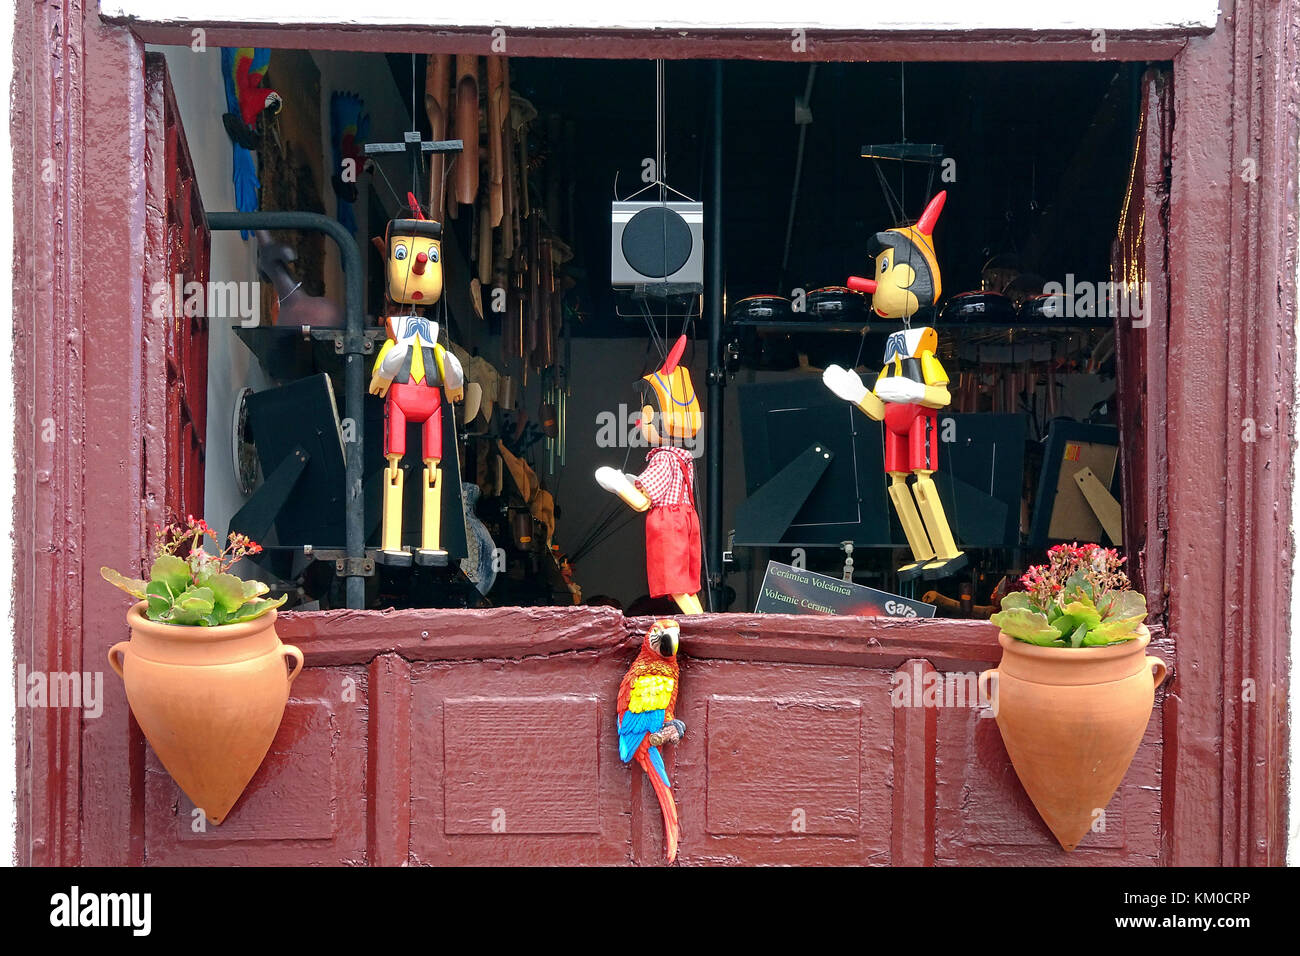 Pinocchio, shop vende bambole in legno, artigianato, villaggio a Garachico, costa nord-ovest dell'isola di Tenerife, Isole canarie, Spagna Foto Stock